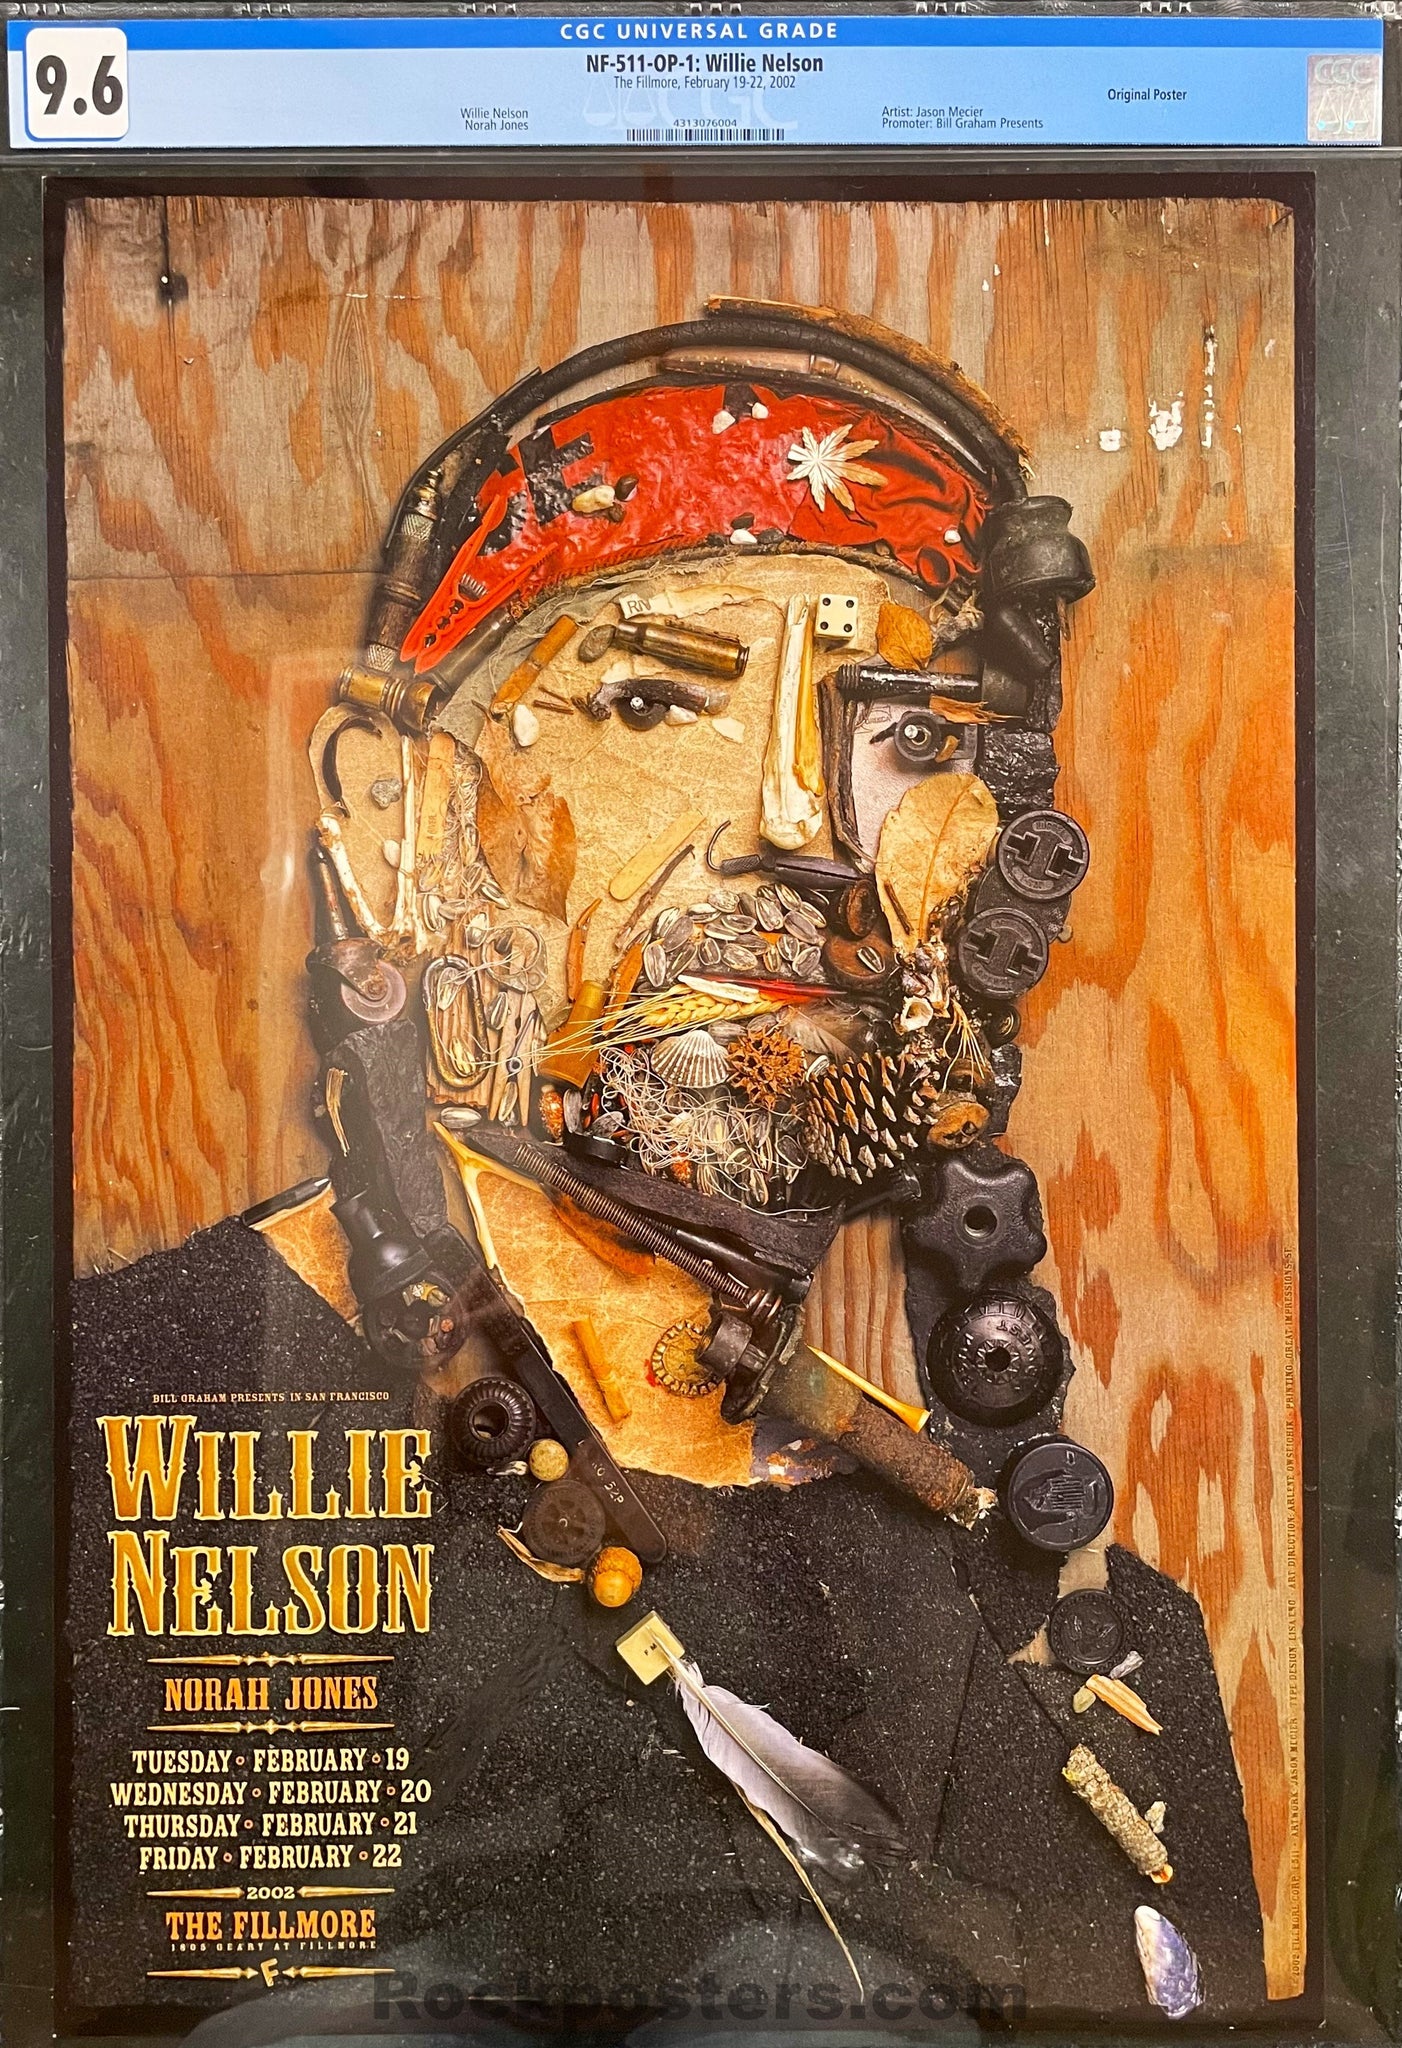 AUCTION - NF-511 - Willie Nelson - Norah Jones - Jason Mercier - 2002 Poster - The Fillmore - CGC Graded 9.6